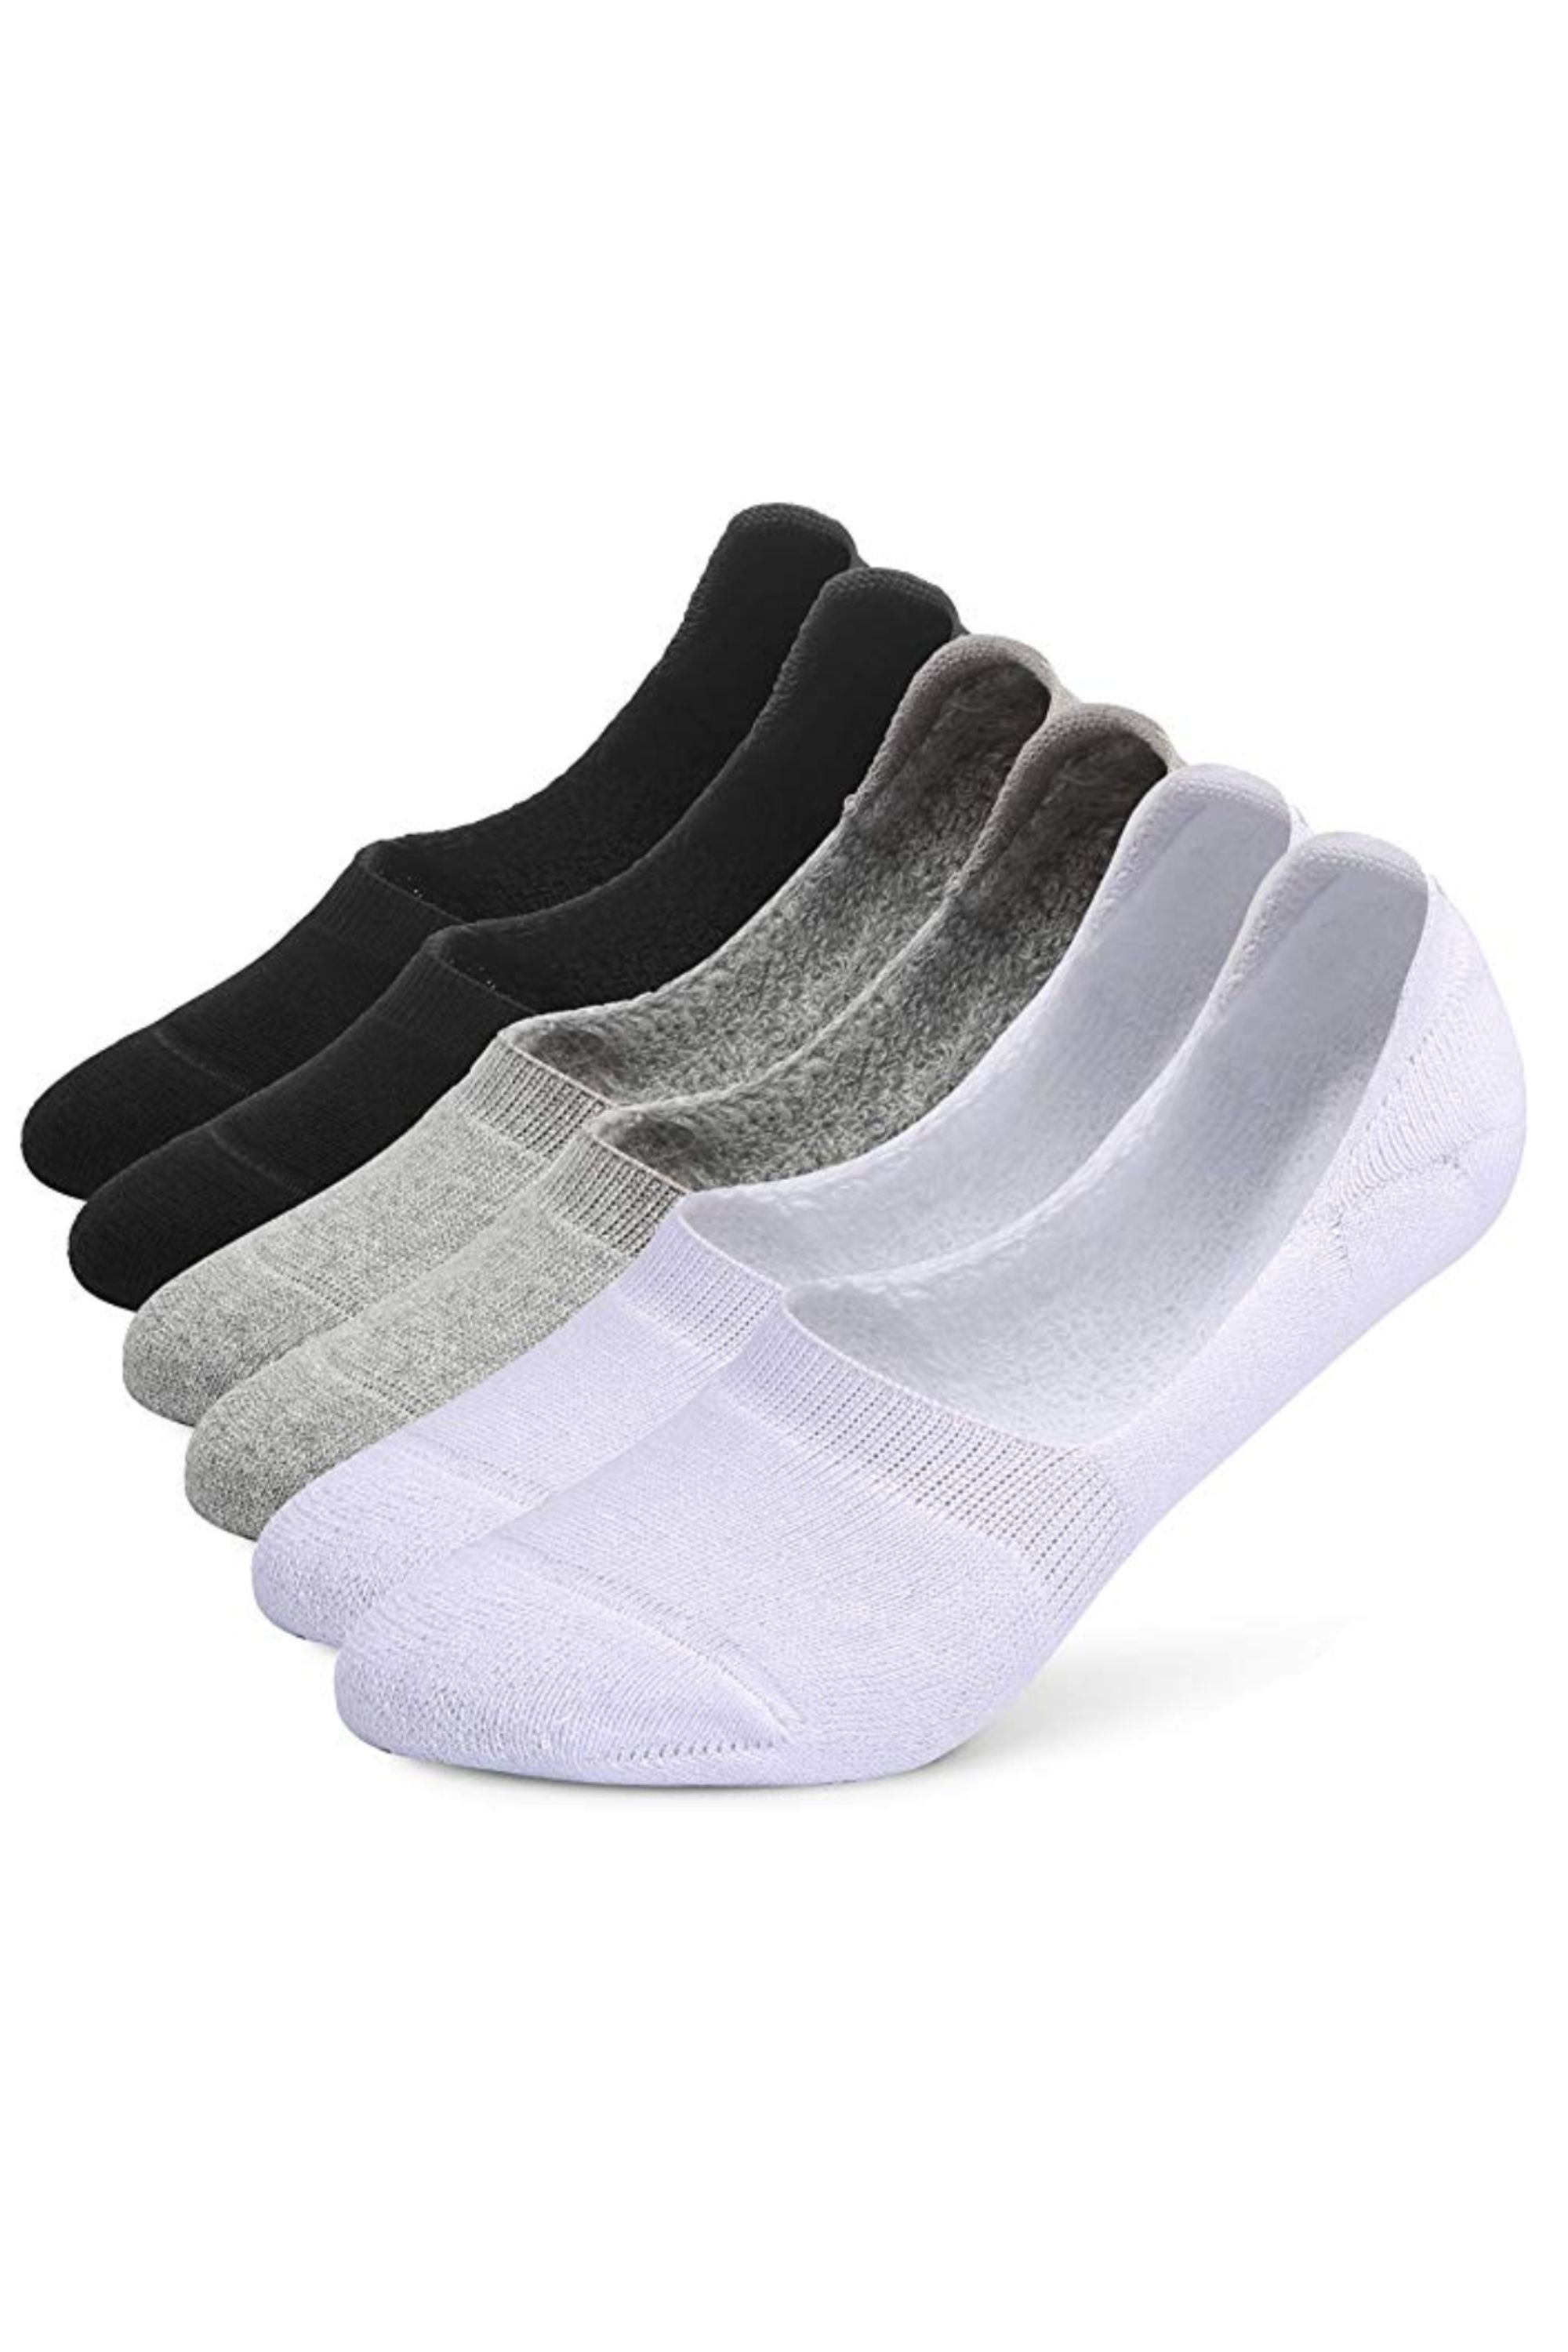 Best No-Show Socks for Women — Hidden Liner Socks That Don't Slip